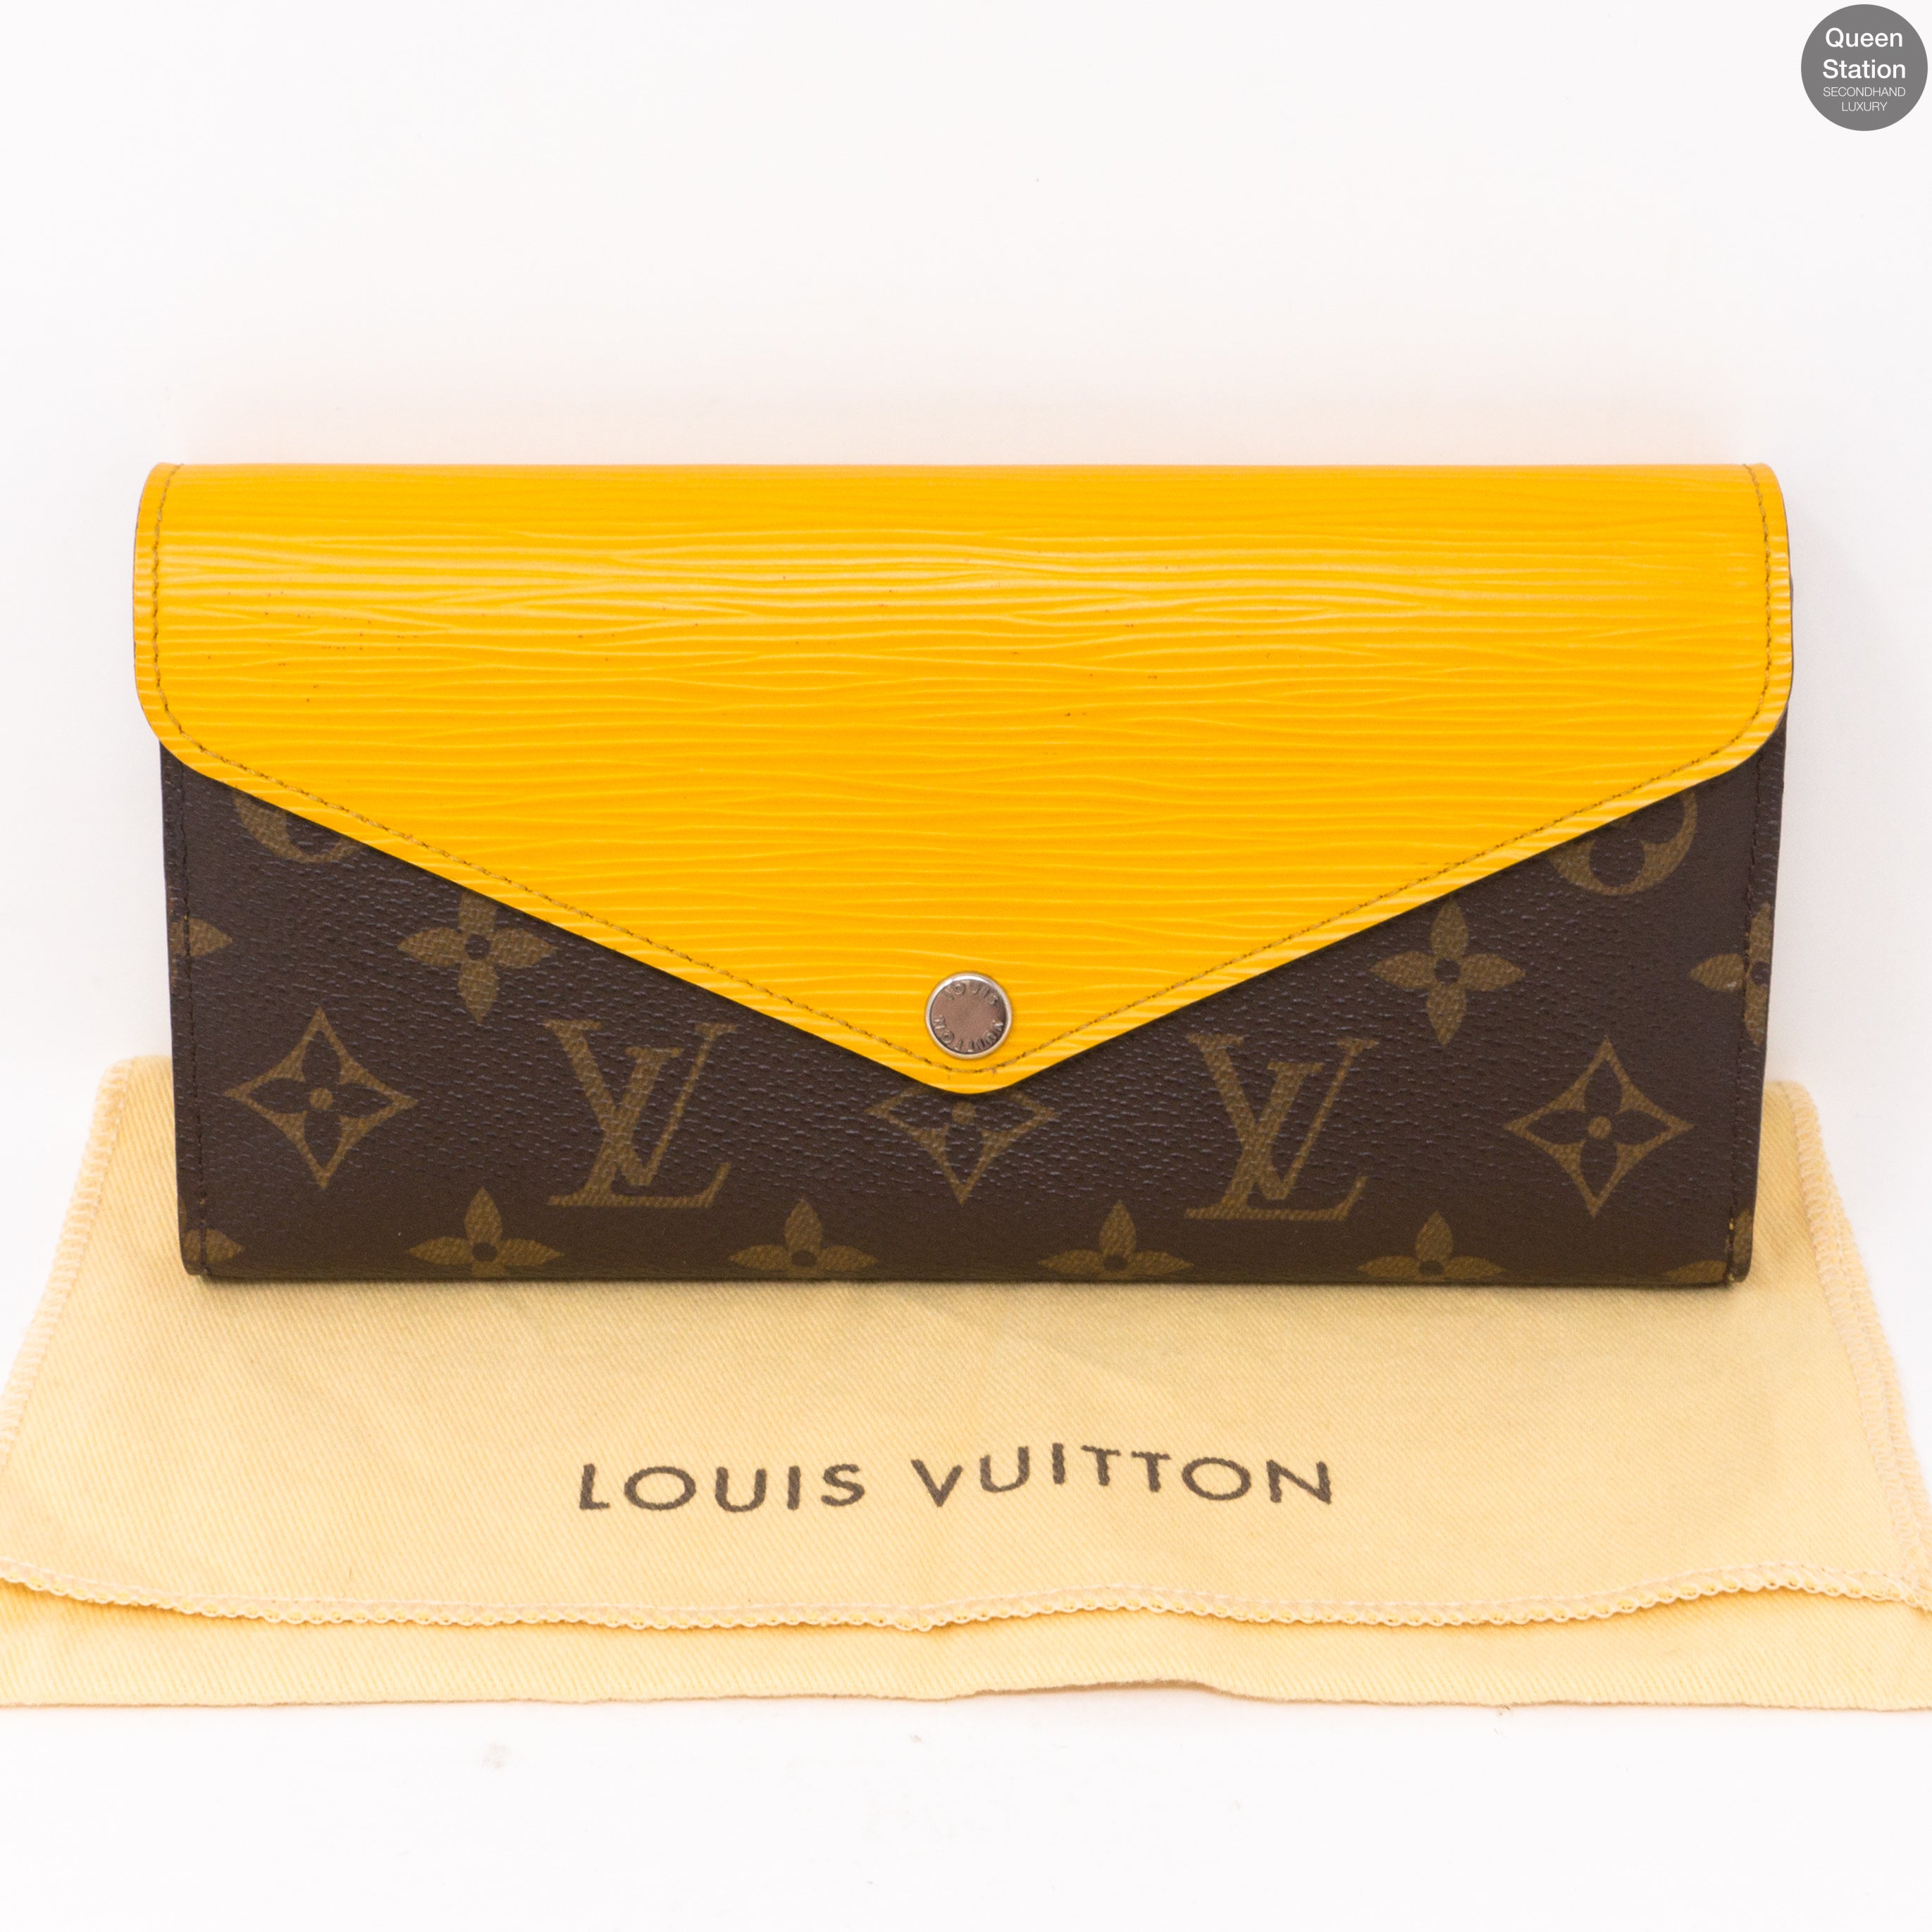 Marie Lou long wallet